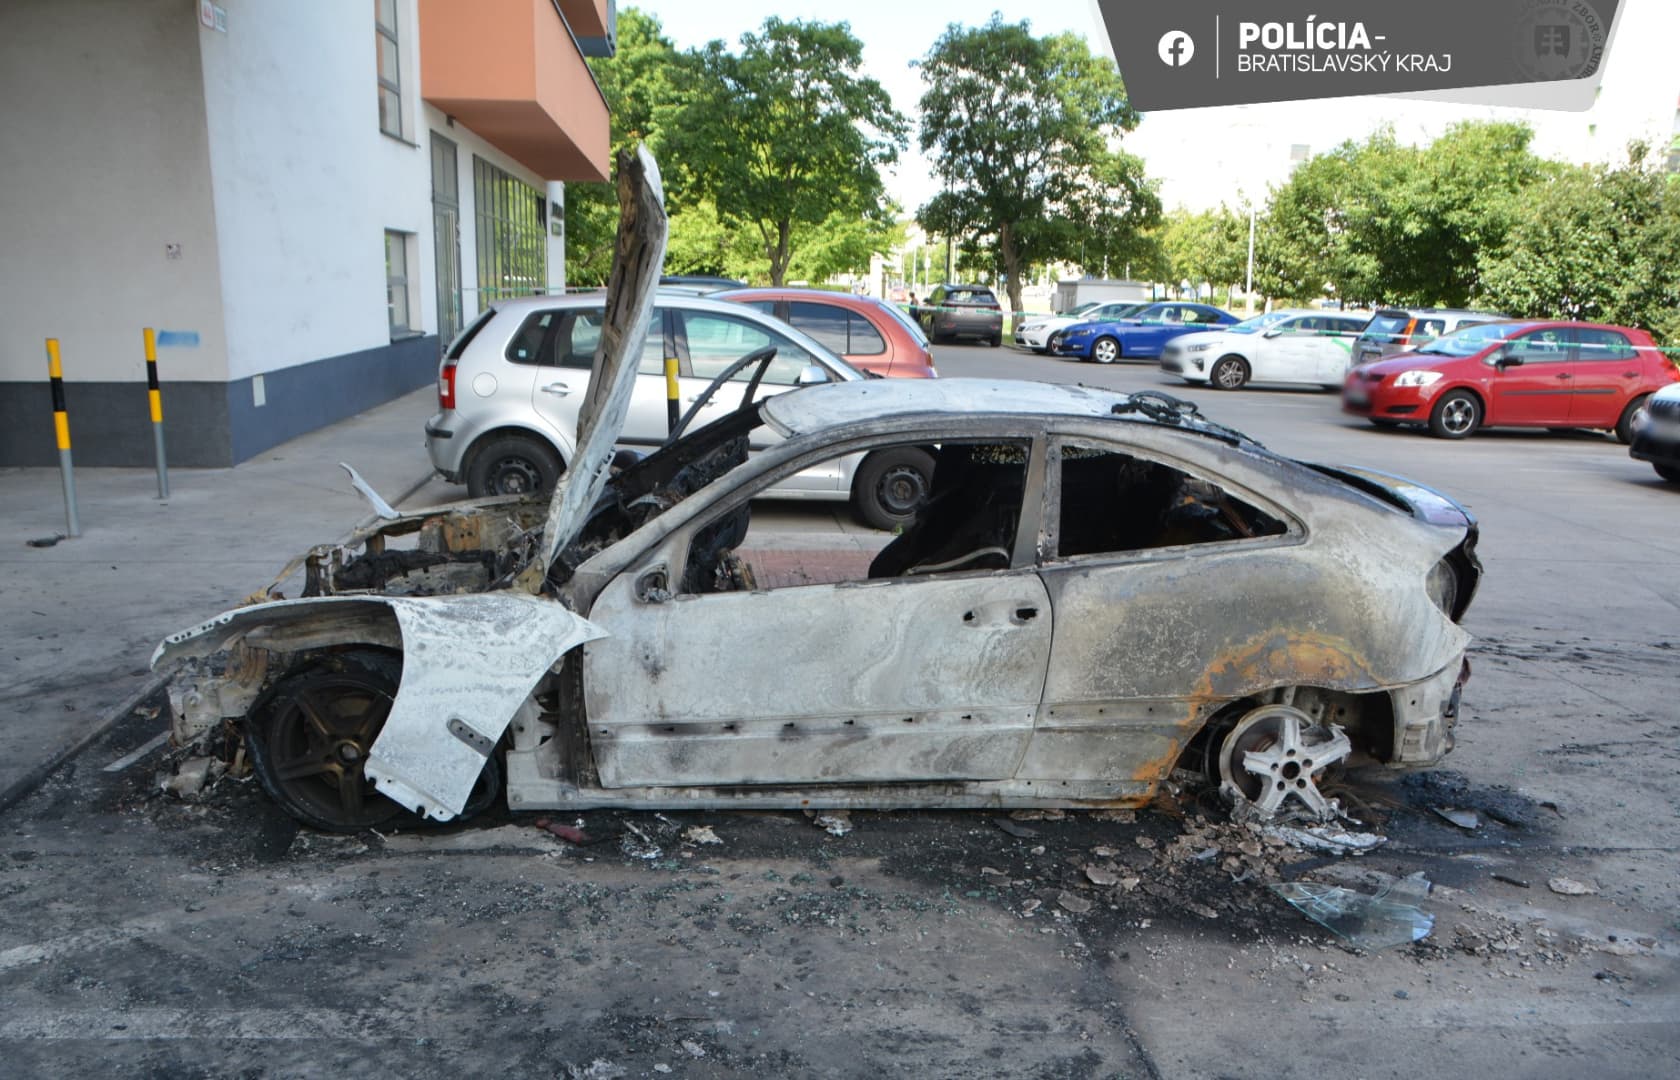 Visszatérnek a maffiamódszerek? Bomba robbant a lakóháznál parkoló autó alatt (FOTÓK)